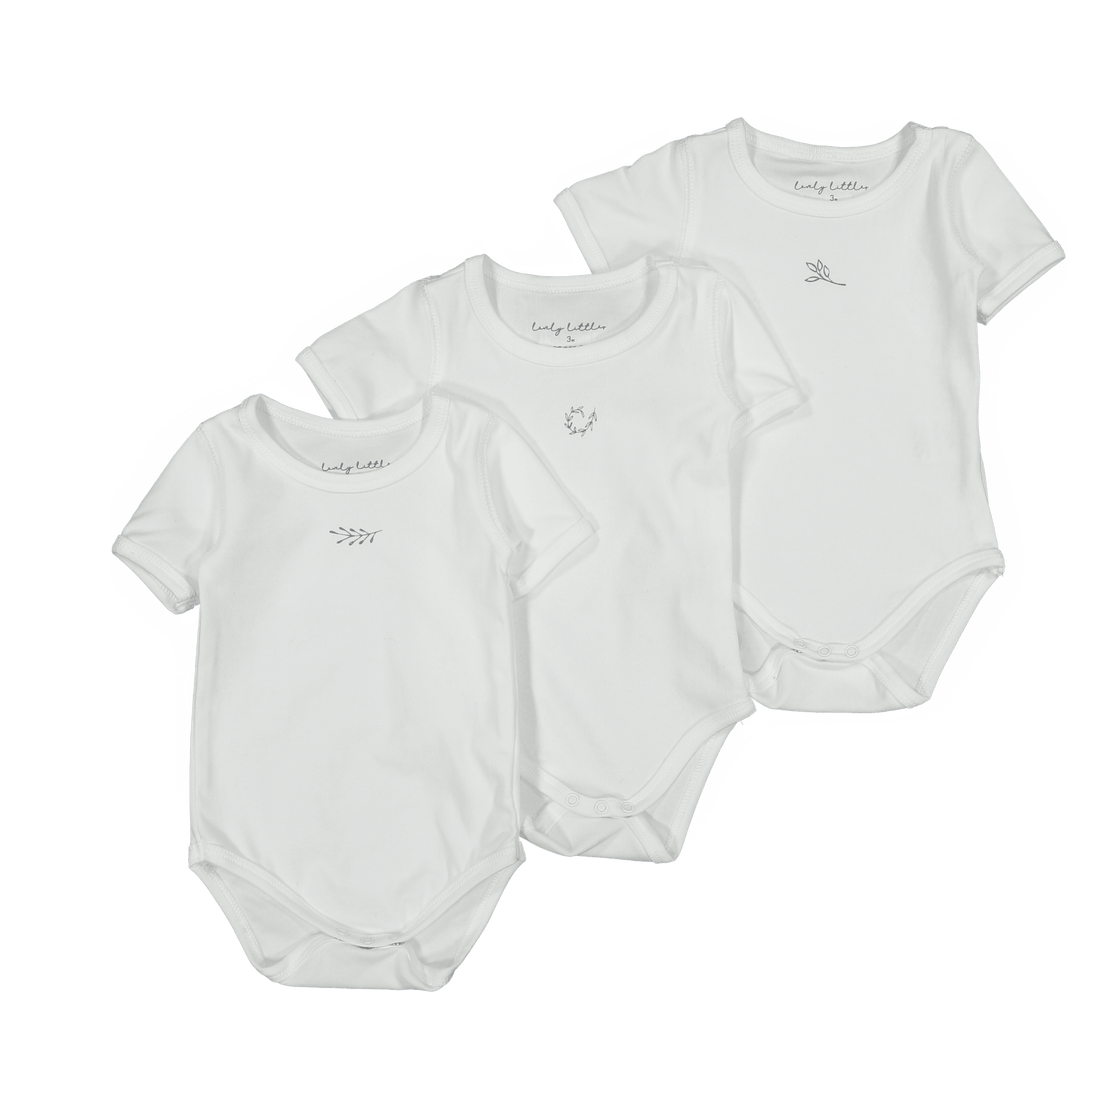 The Basic Short Sleeve Set – Lovely Littles